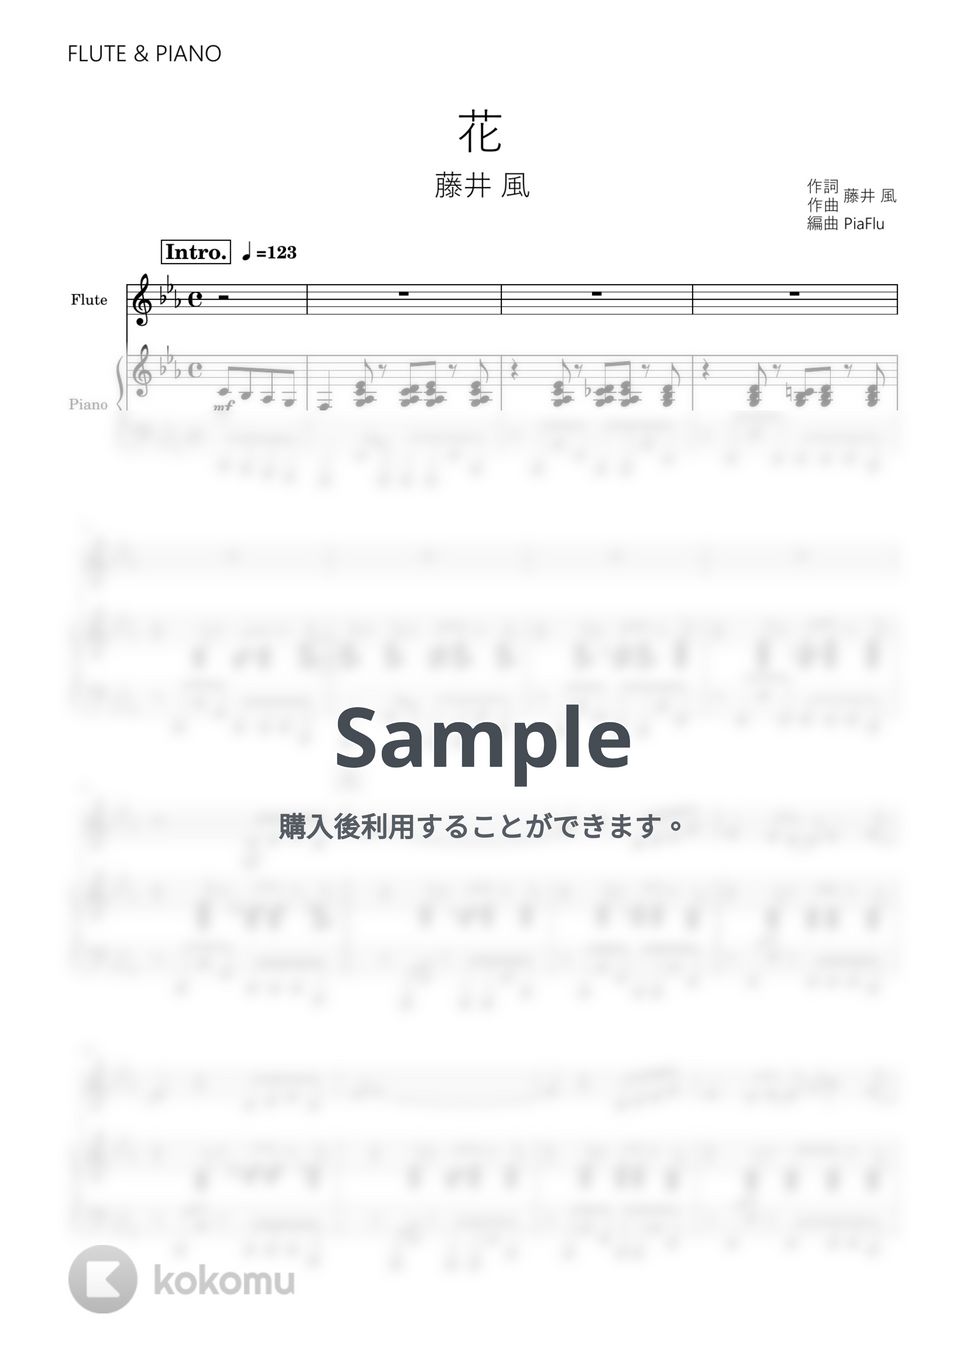 藤井 風 - 花 (フルート&ピアノ伴奏) by PiaFlu